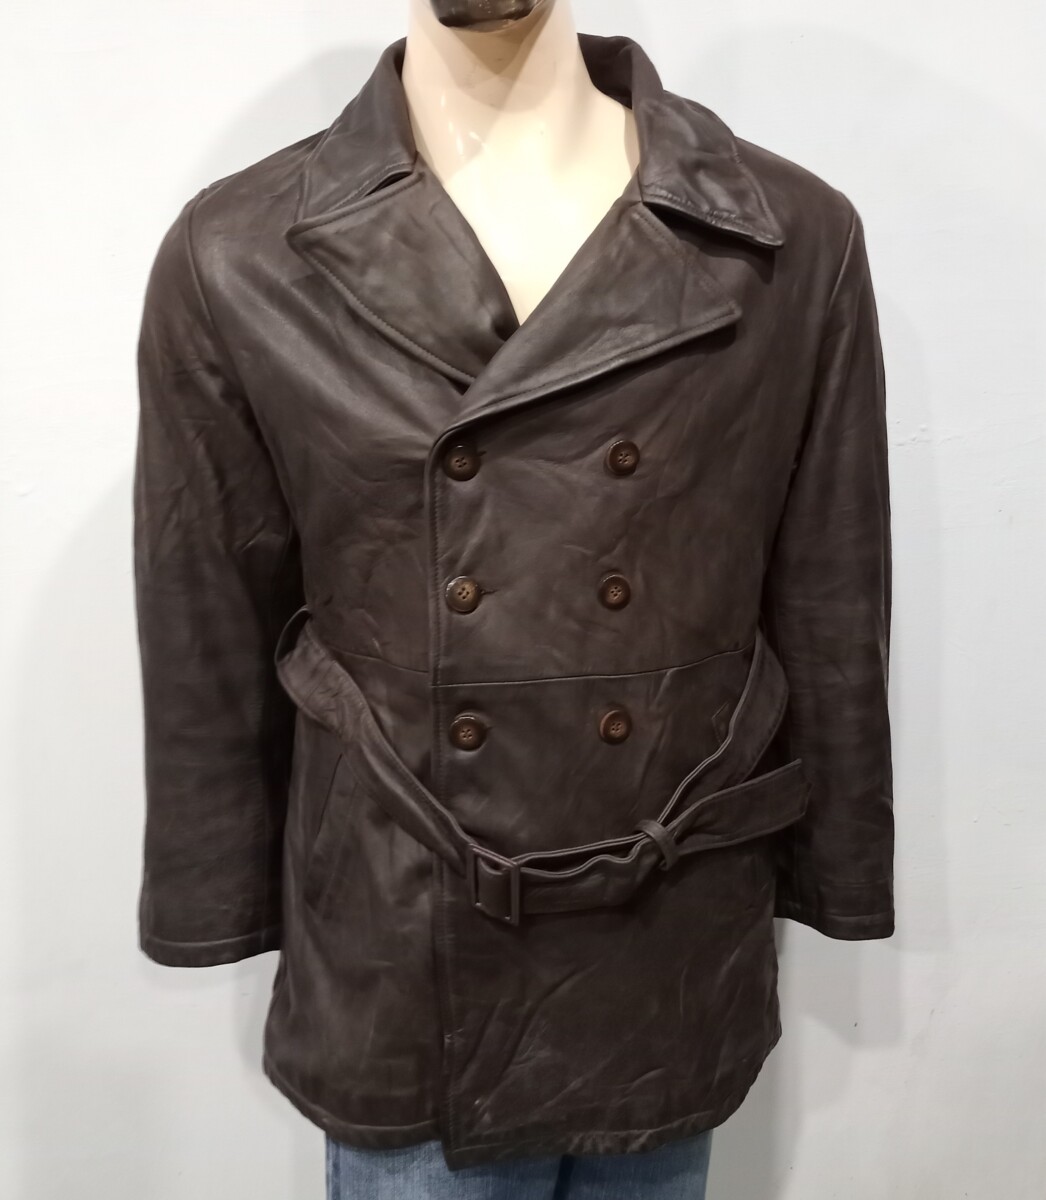 SERGE HERVET Men's Double Breasted Stylish Heavy Leather Jacket (M-M2)